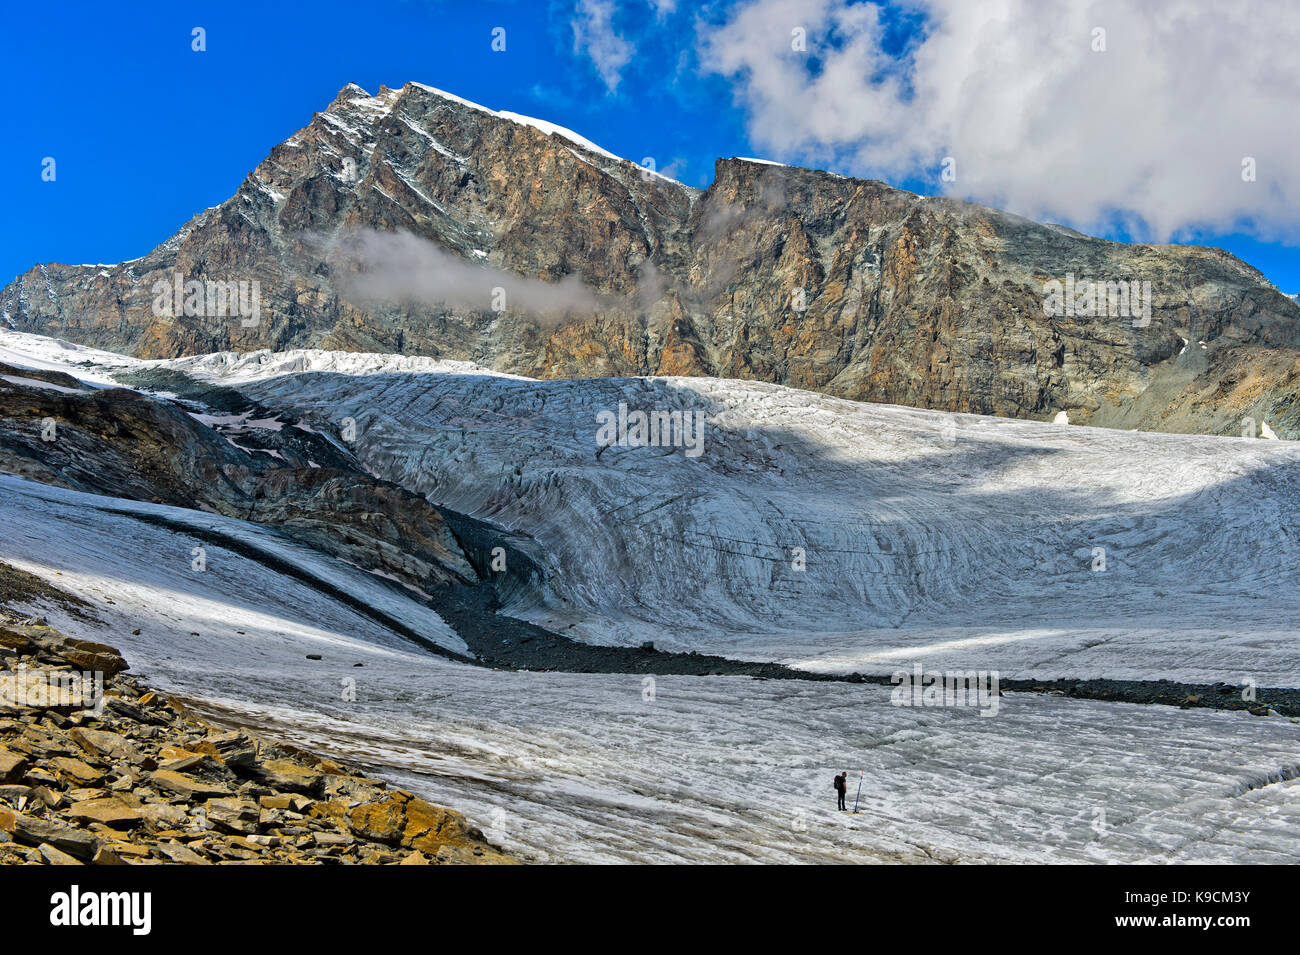 Escursionista attraversando il ghiacciaio allalingletscher lungo il sentiero del ghiacciaio felskinn-mattmark, picco allalinhorn dietro, Saas fee, Vallese, Svizzera Foto Stock